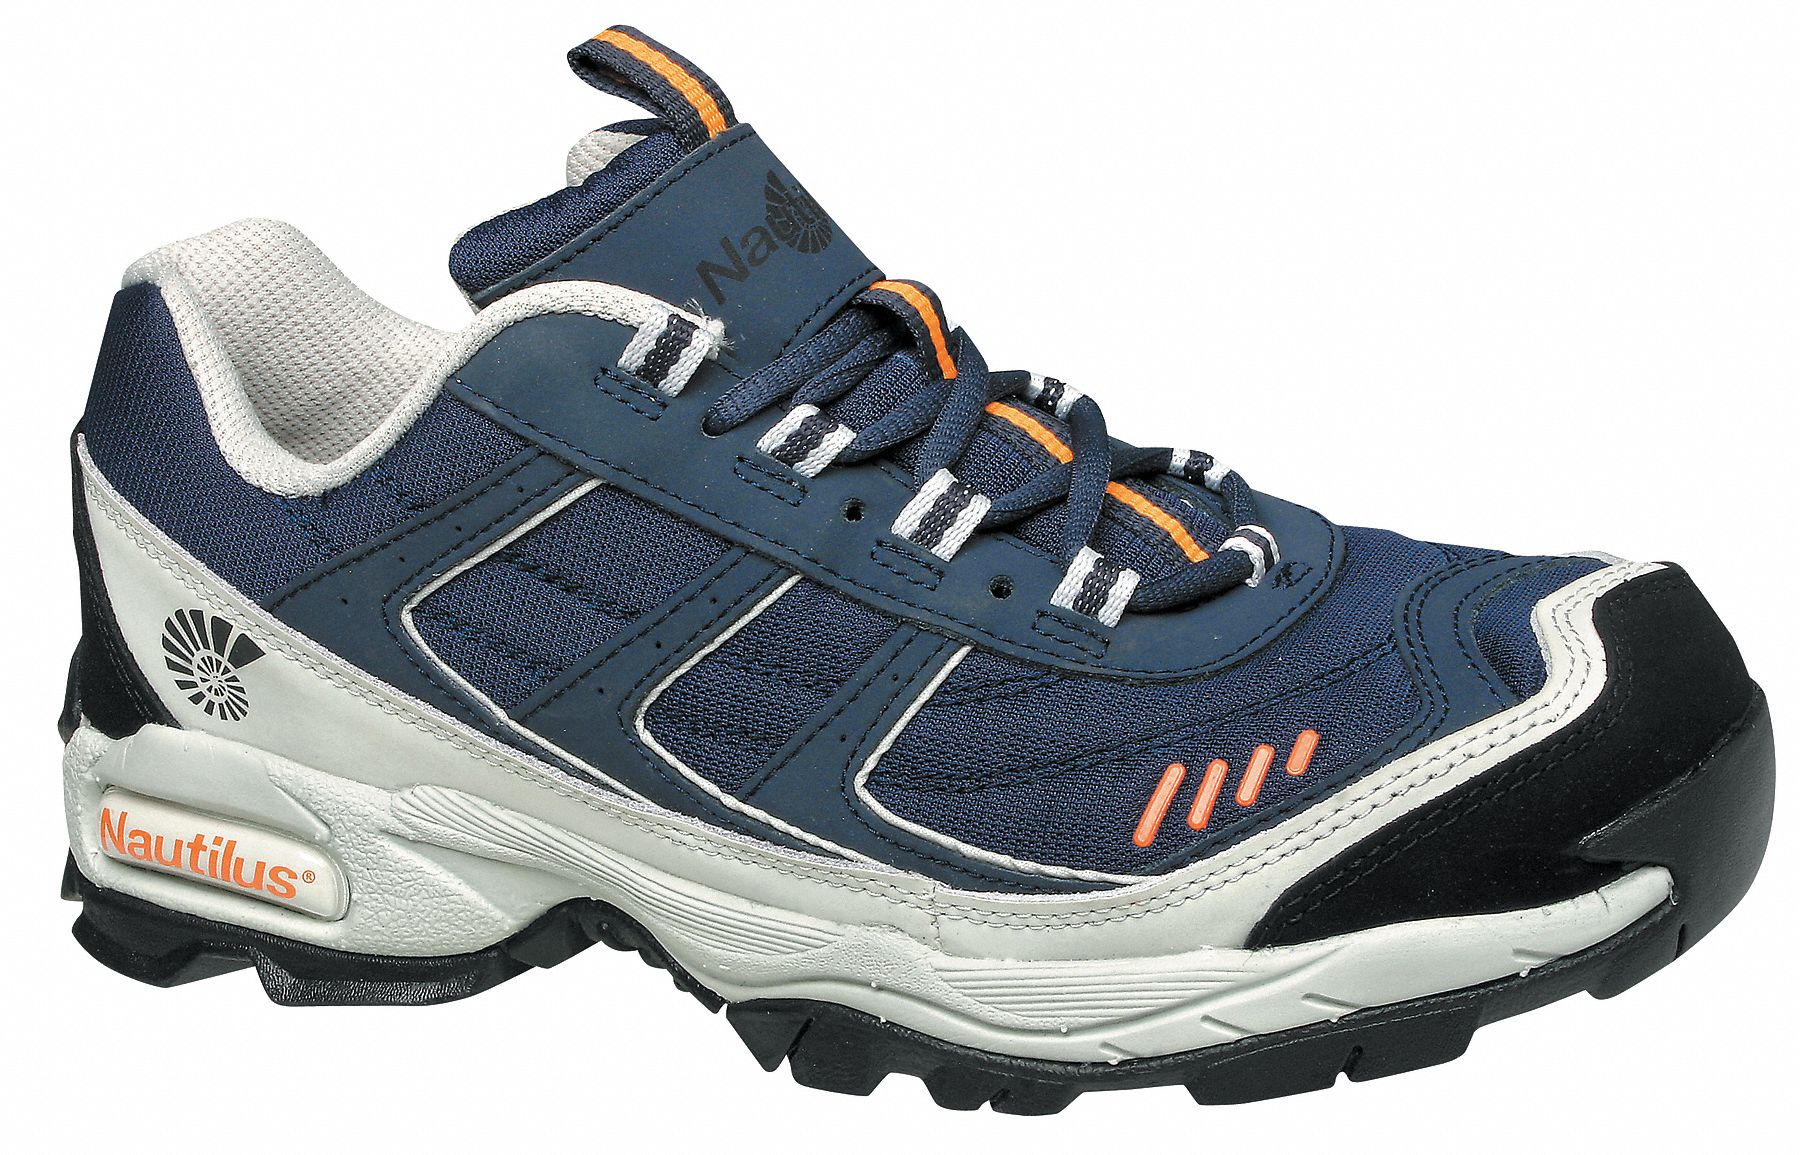 NAUTILUS SAFETY FOOTWEAR, Medium, 13, Work Shoe - 34DZ09|N1326 SZ: 13M -  Grainger